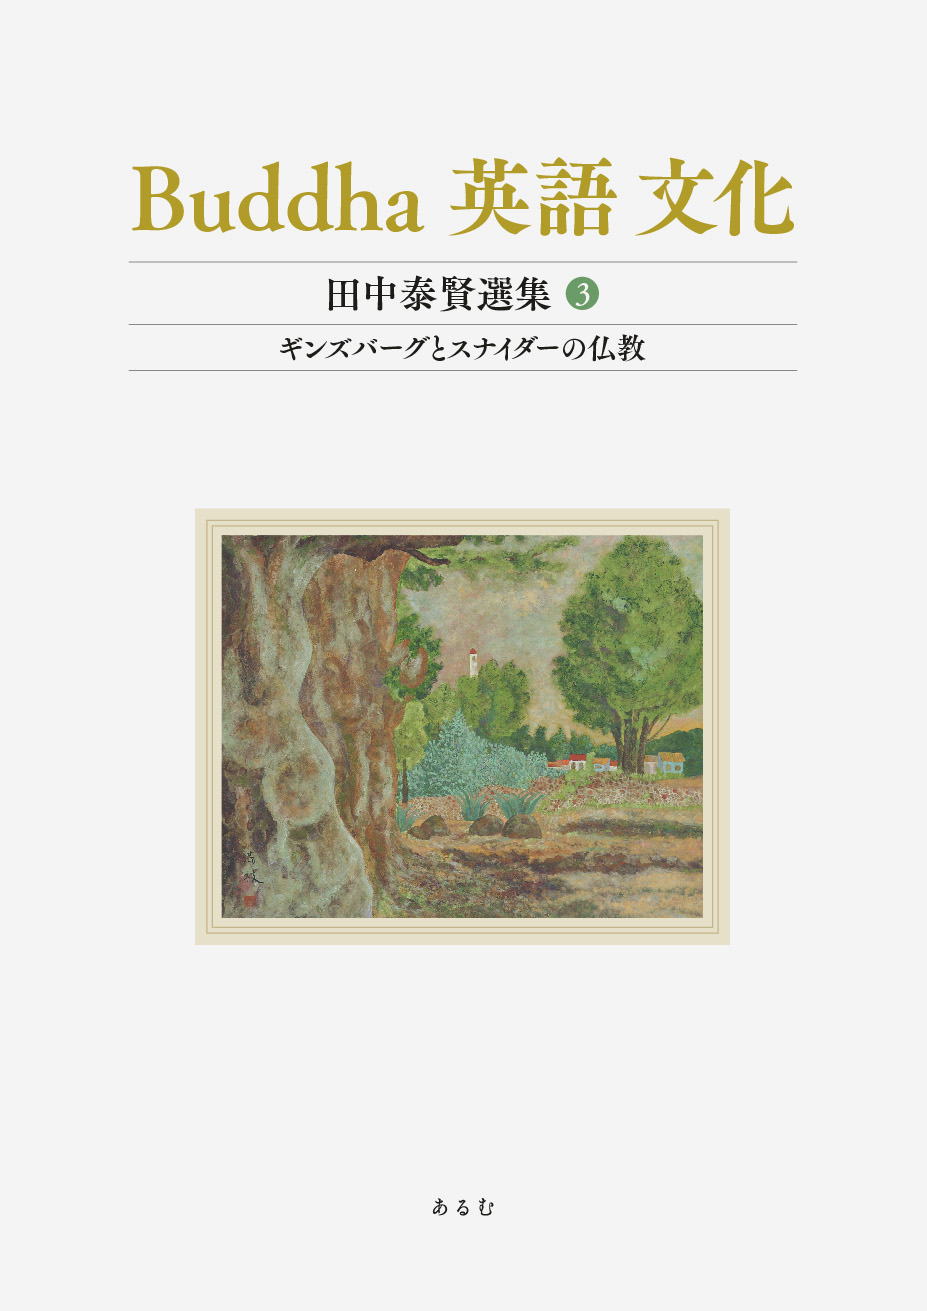 Buddha　英語　文化（田中泰賢選集）3の商品画像